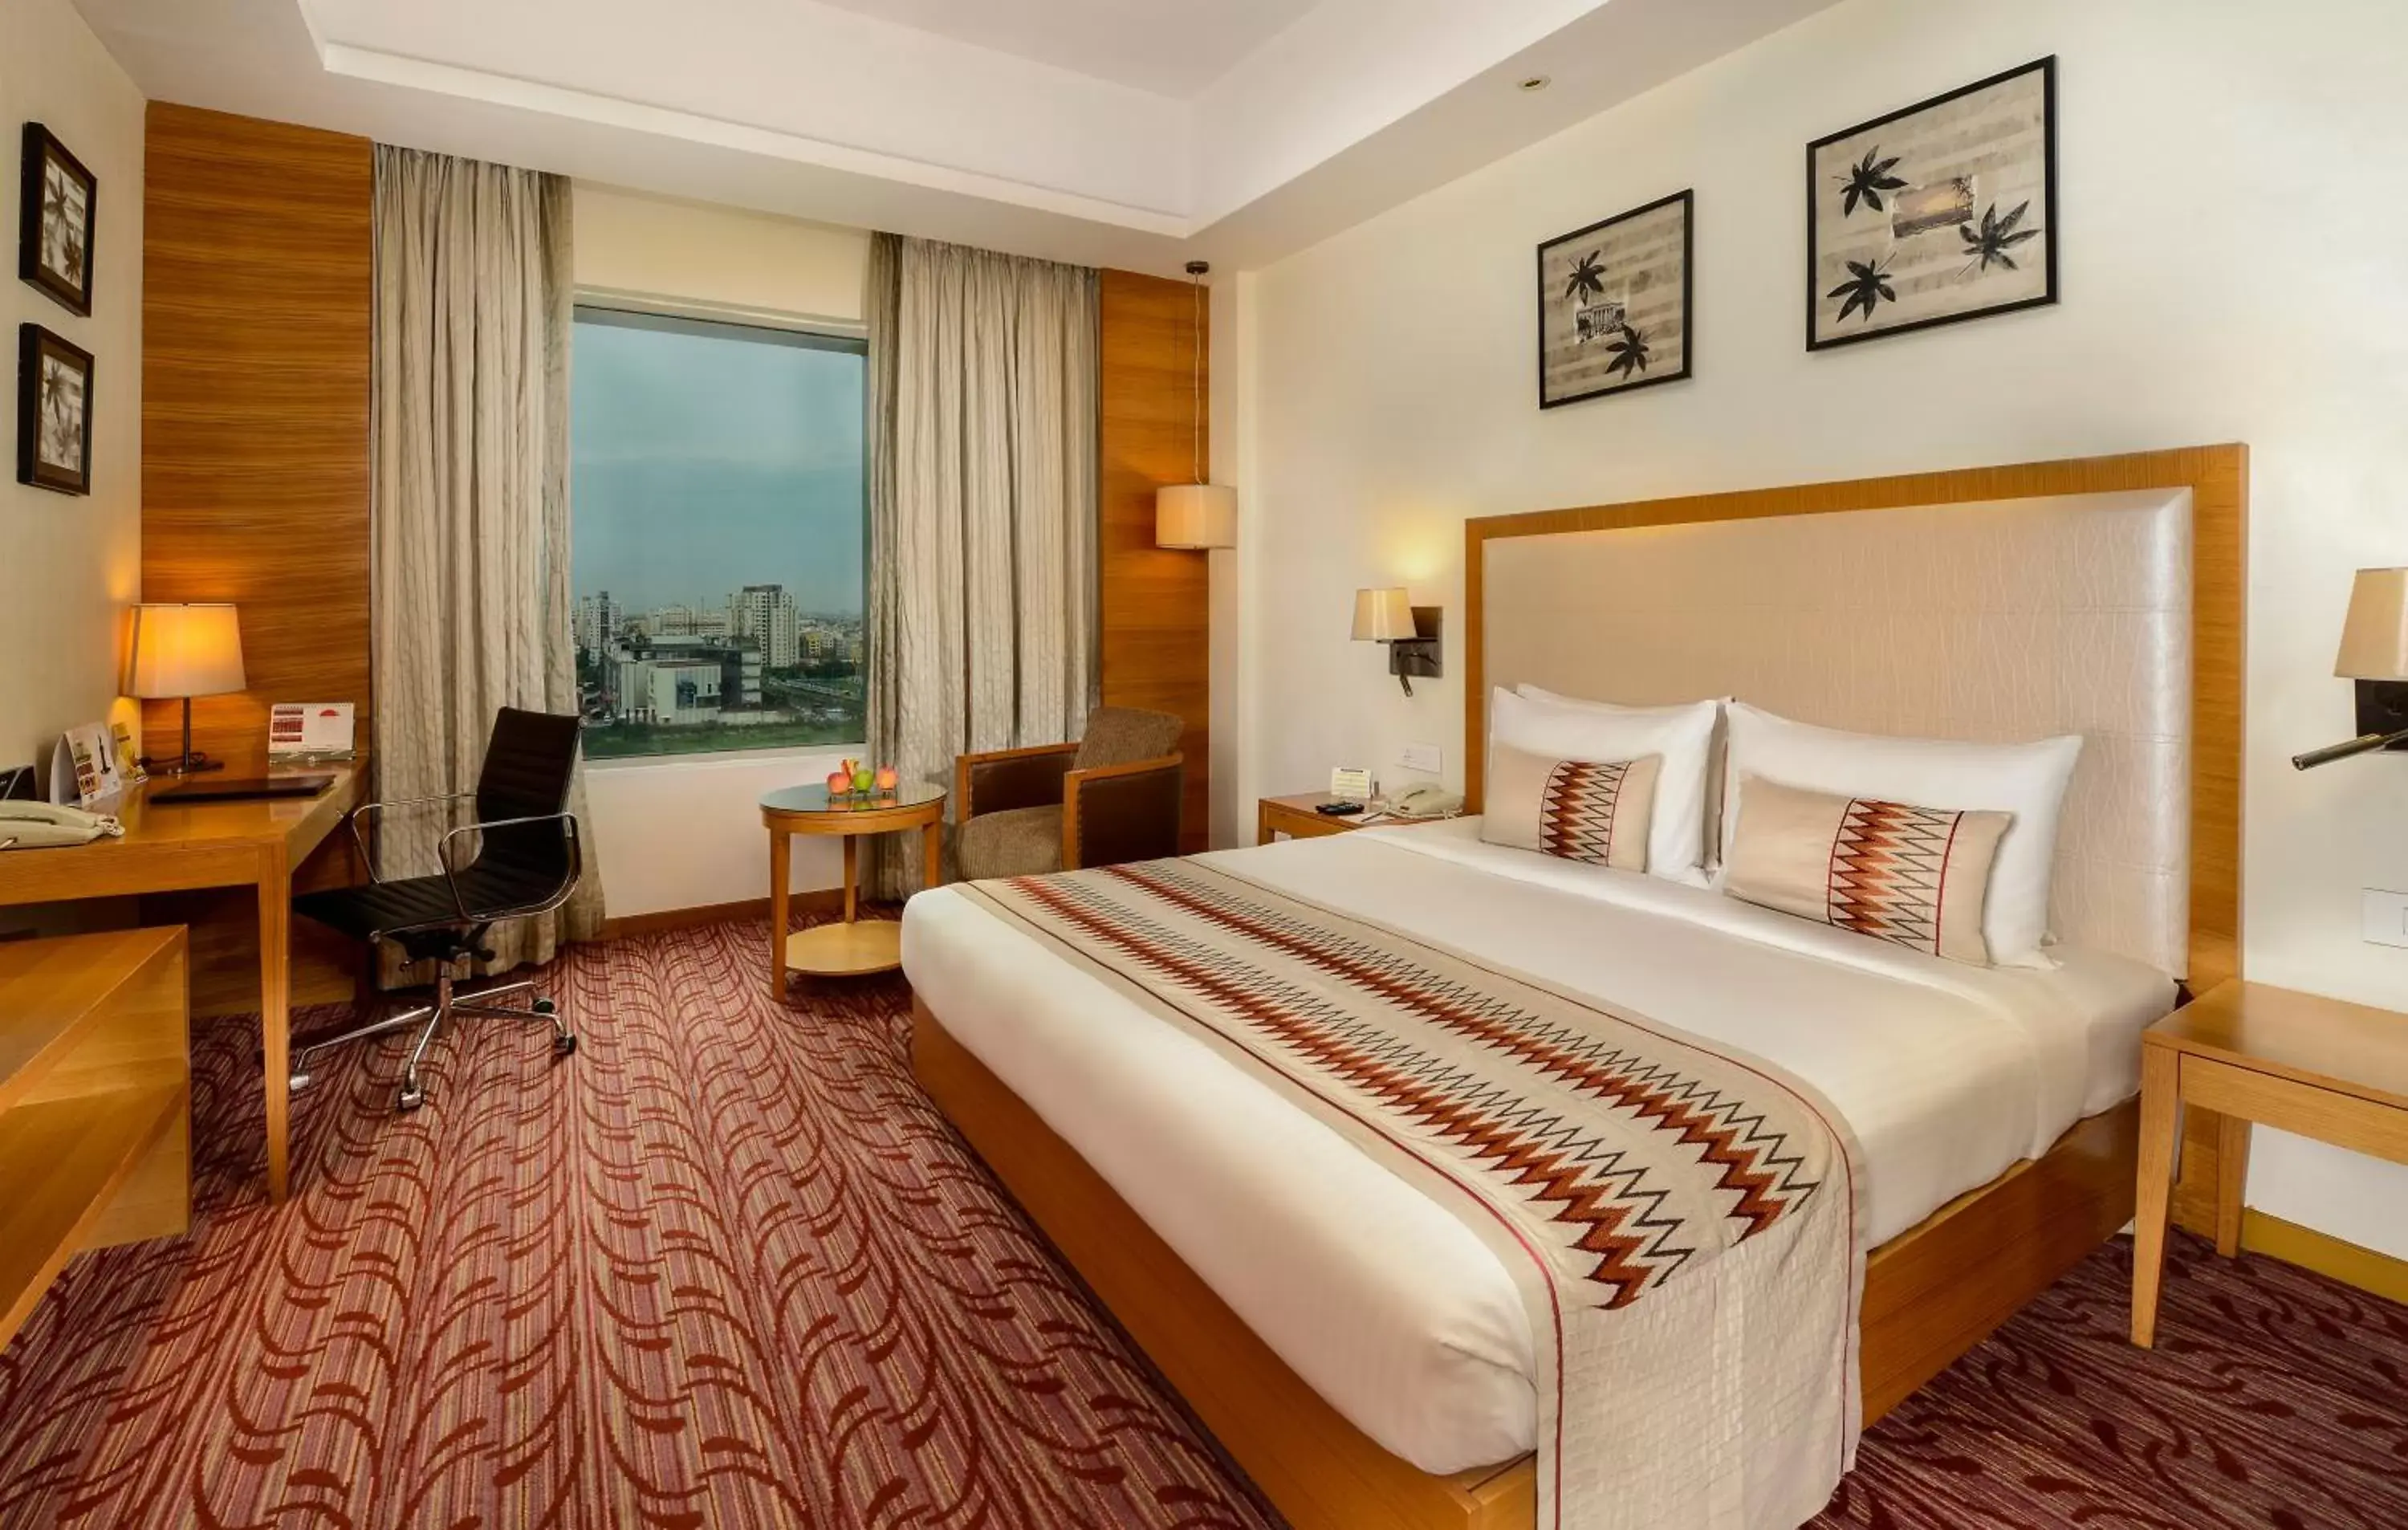 Bedroom, Bed in Pride Plaza Hotel, Kolkata